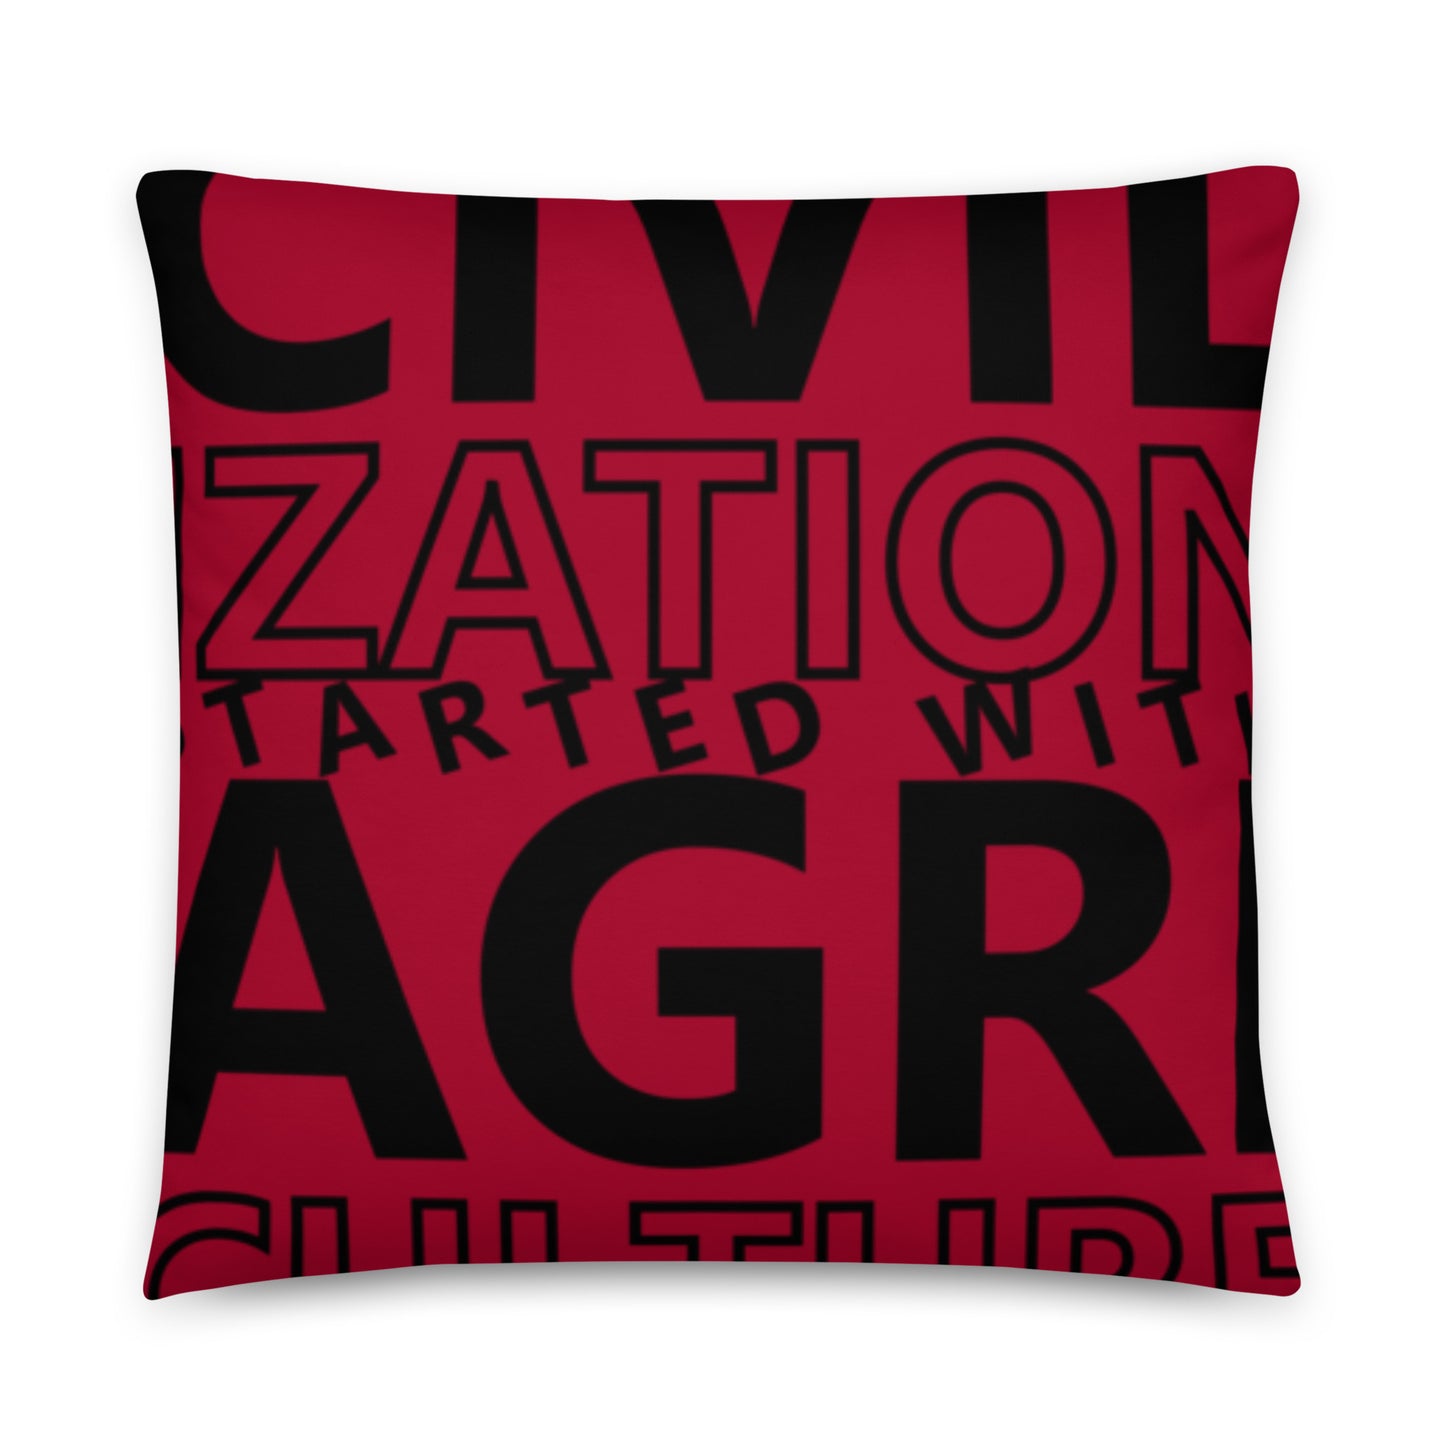 CIVILIZATION Basic Pillow